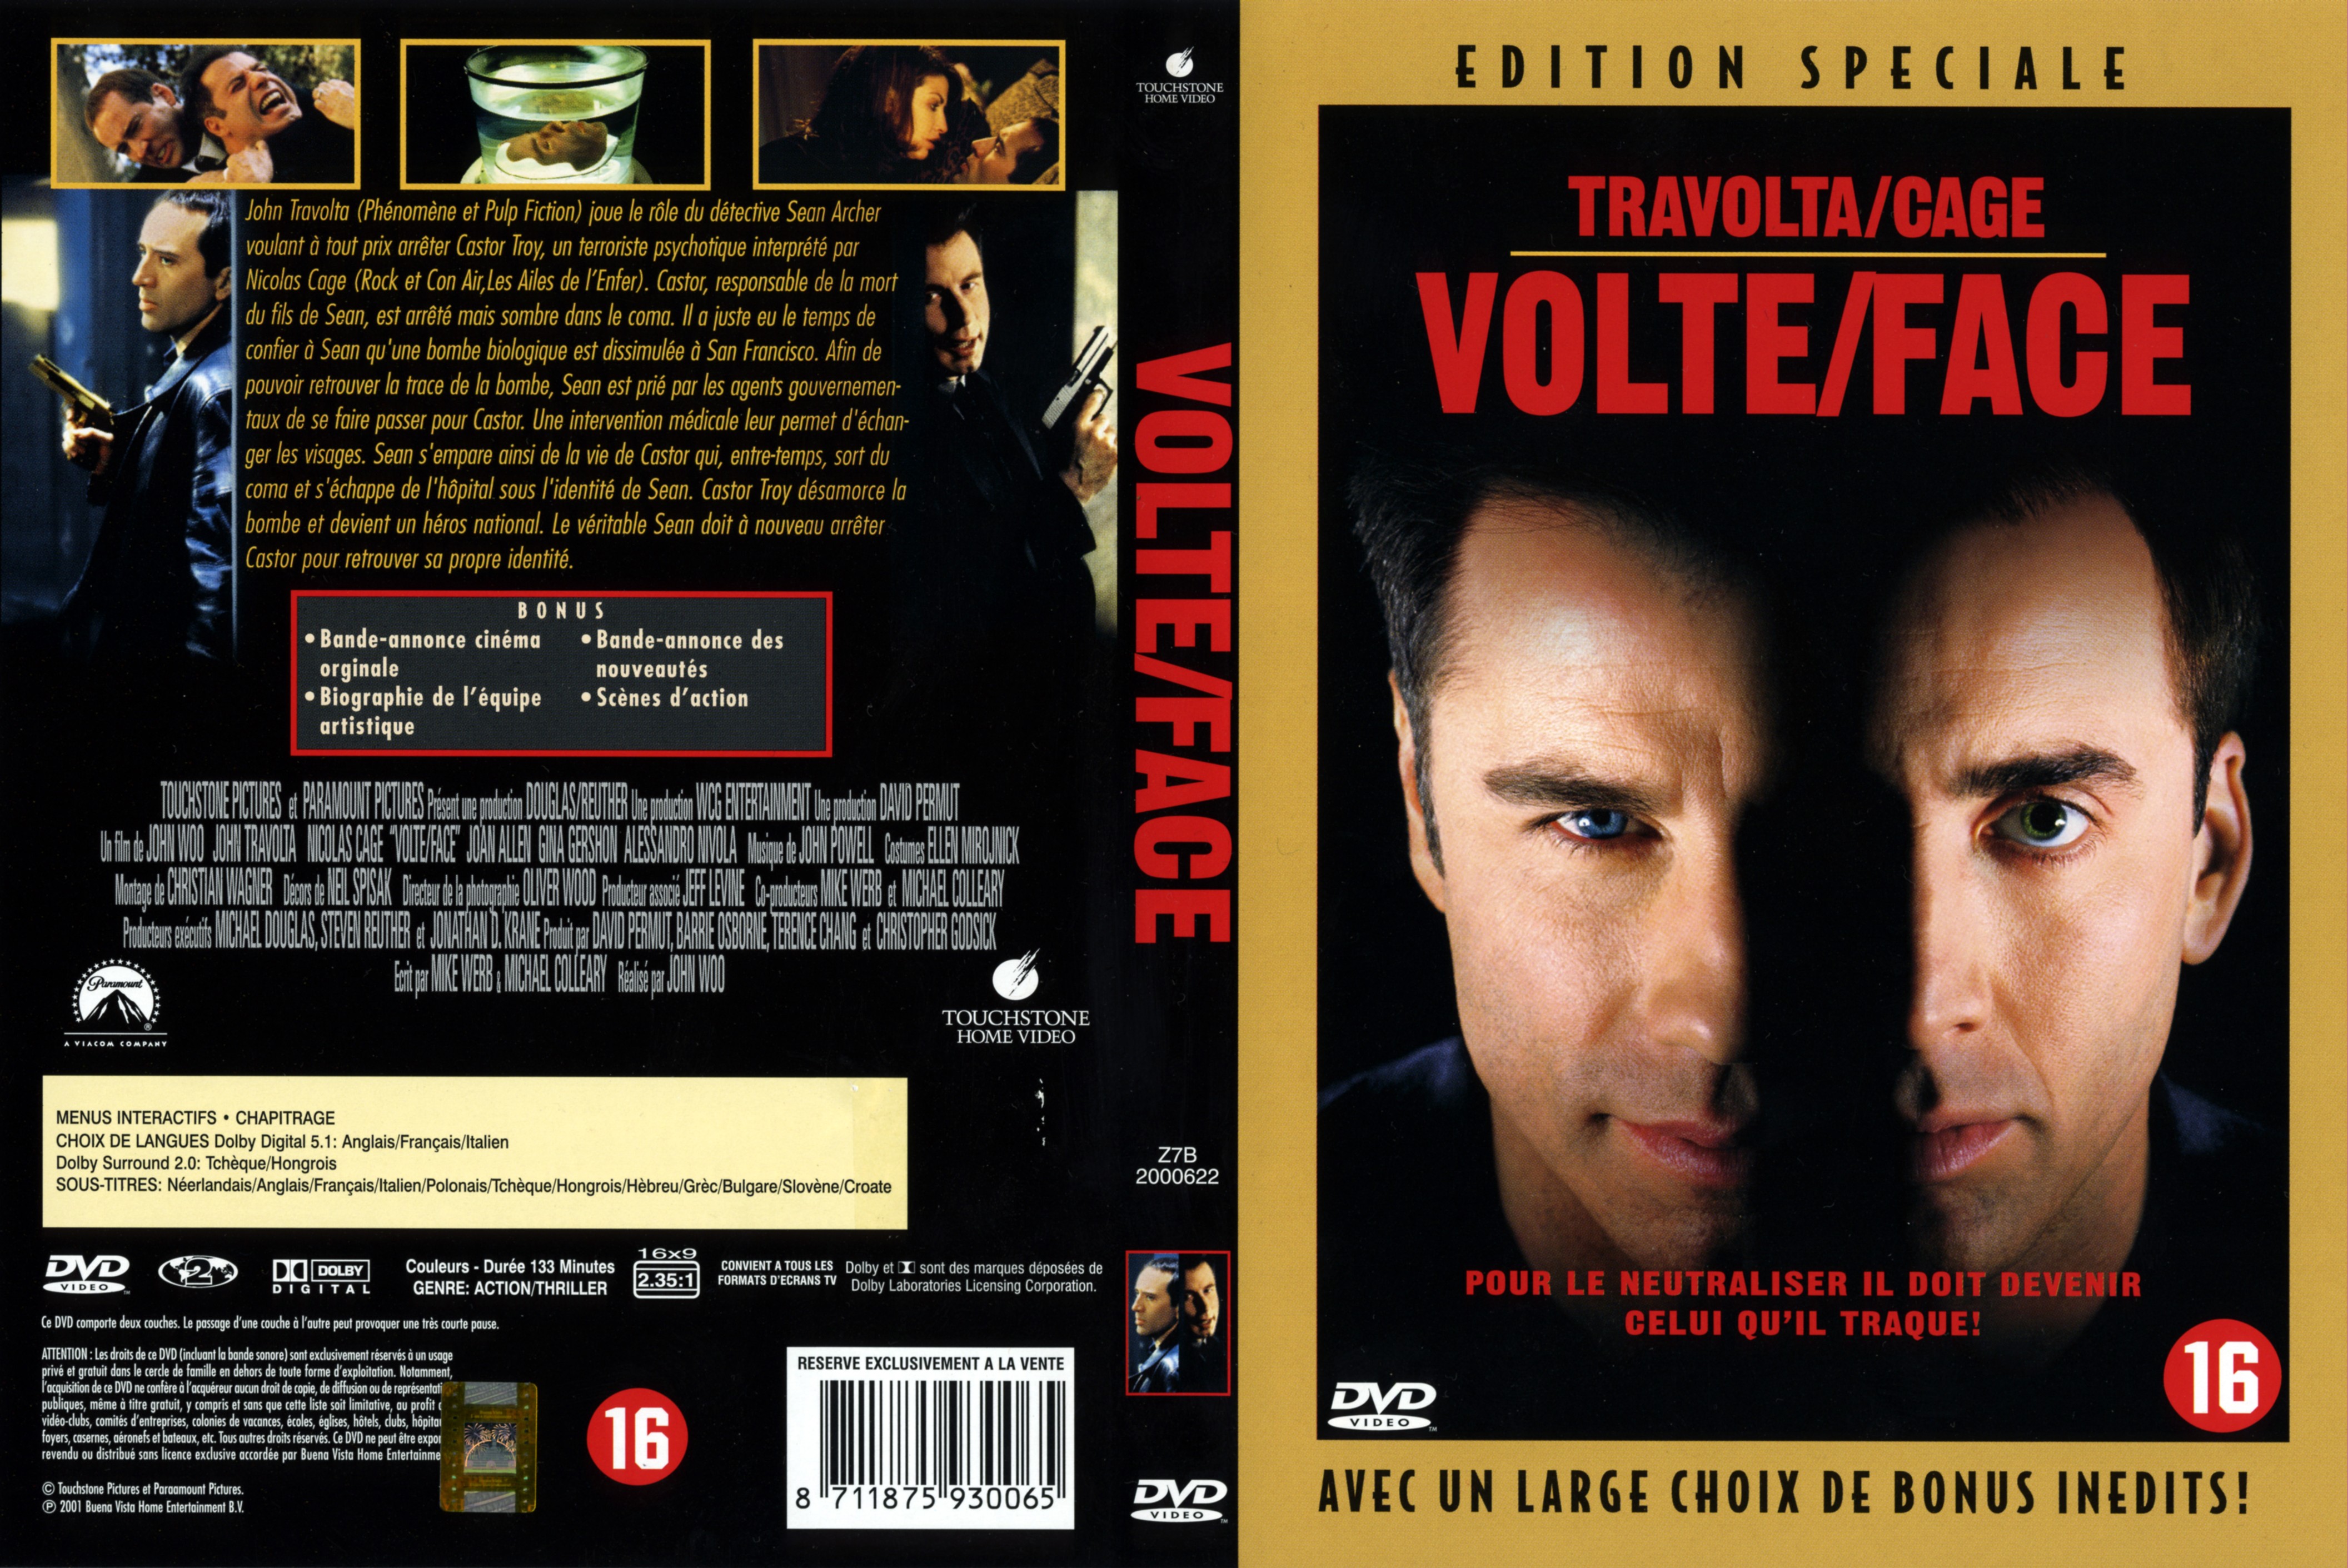 Jaquette DVD Volte face v2